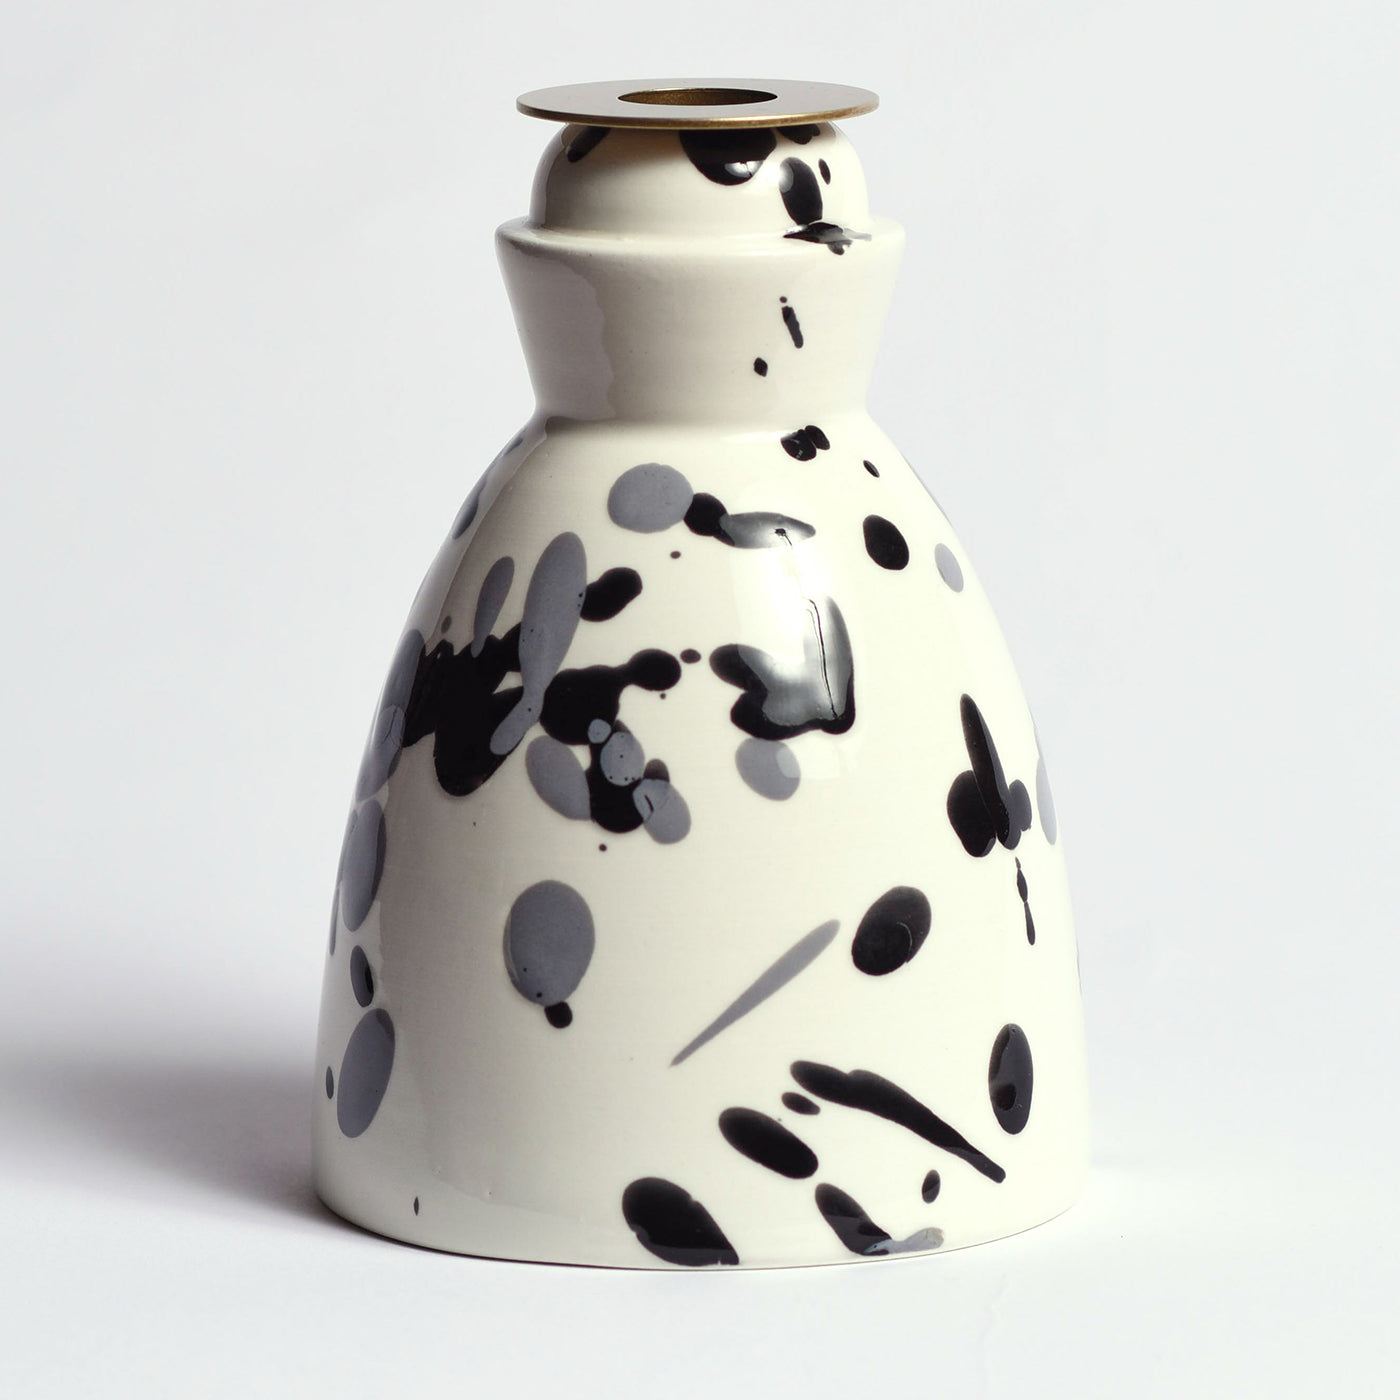 Candelabro de cerámica en blanco y negro con 4 velas perfumadas - Vista alternativa 1